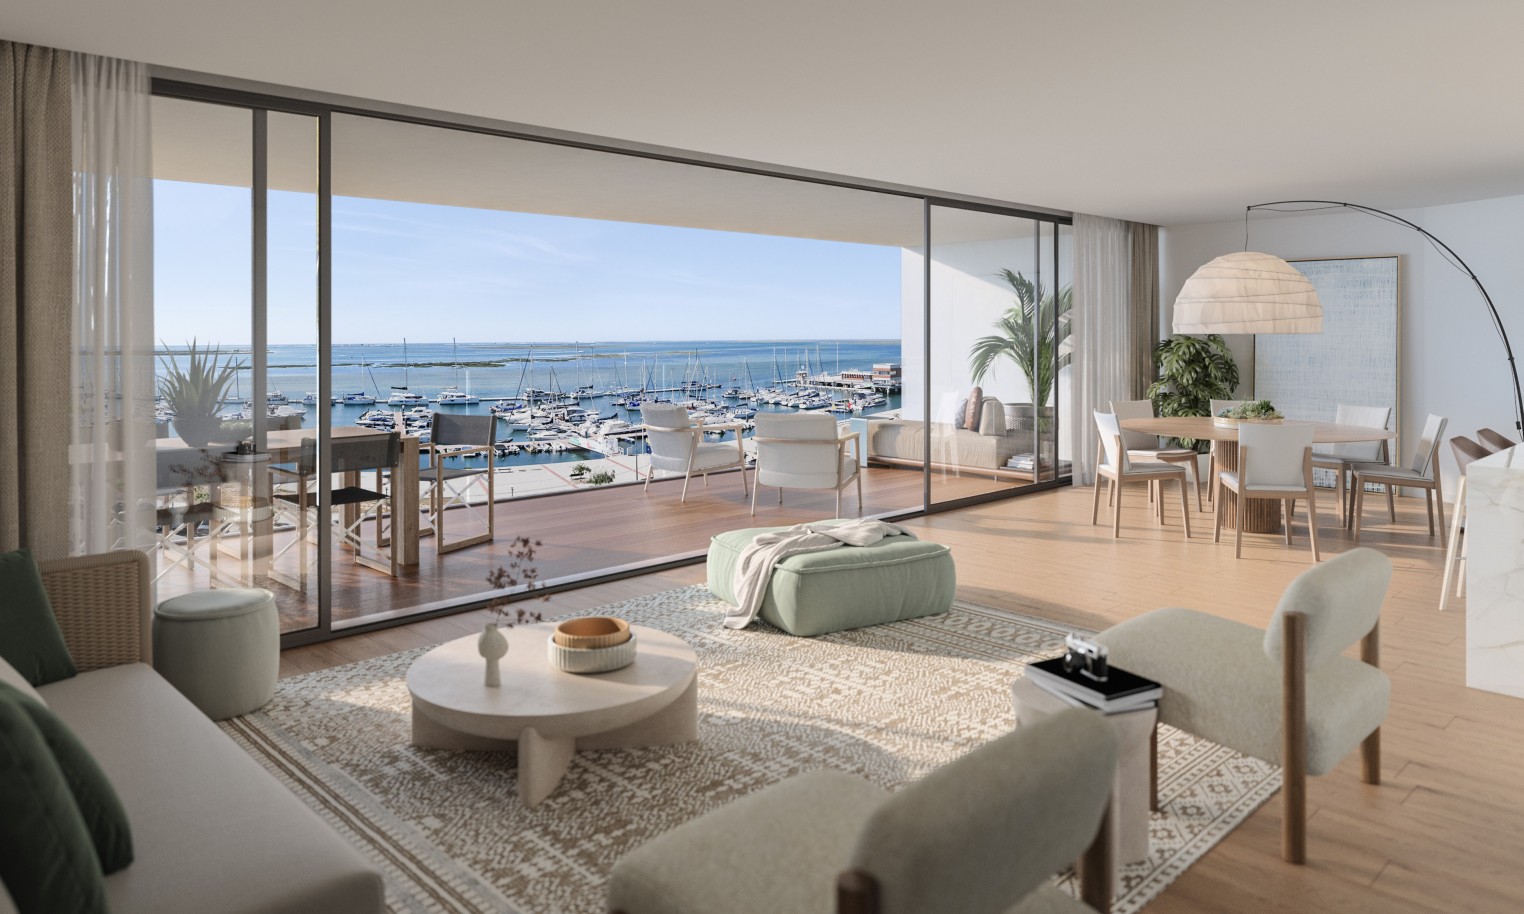 Pisos nuevos con vistas al mar, 1, 2 y 3 dormitorios, en venta en Olhão, Algarve_244476